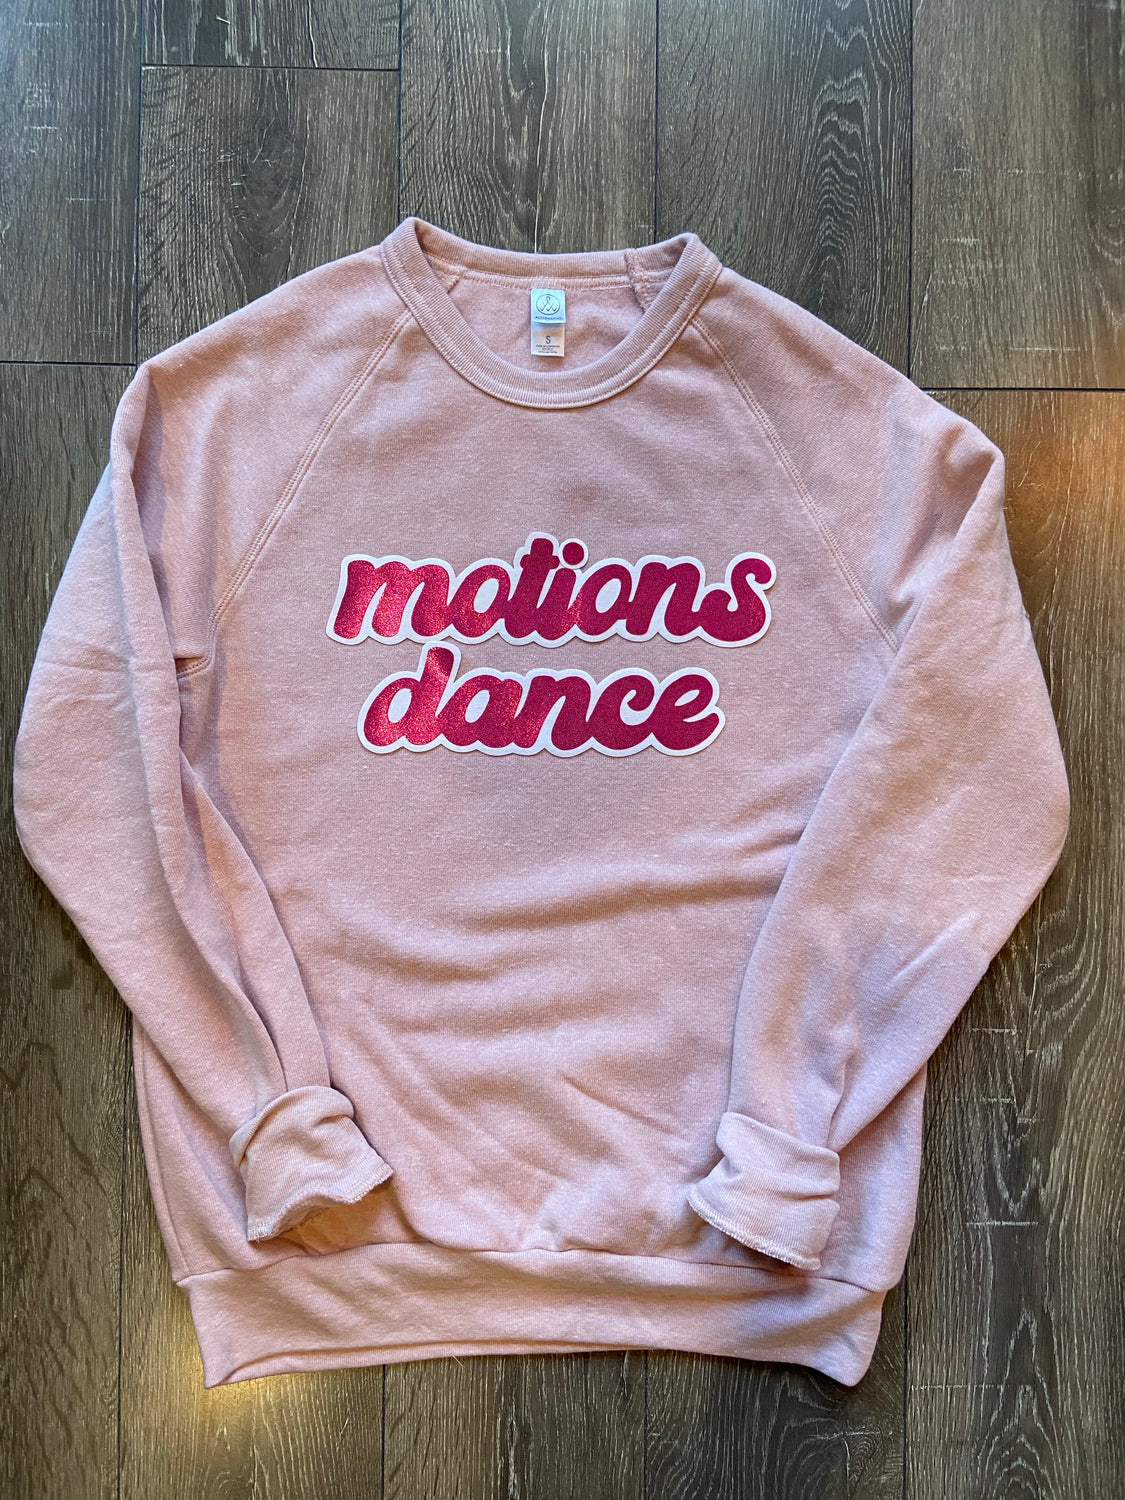 MOTIONS DANCE - PINK FLEECE CREW